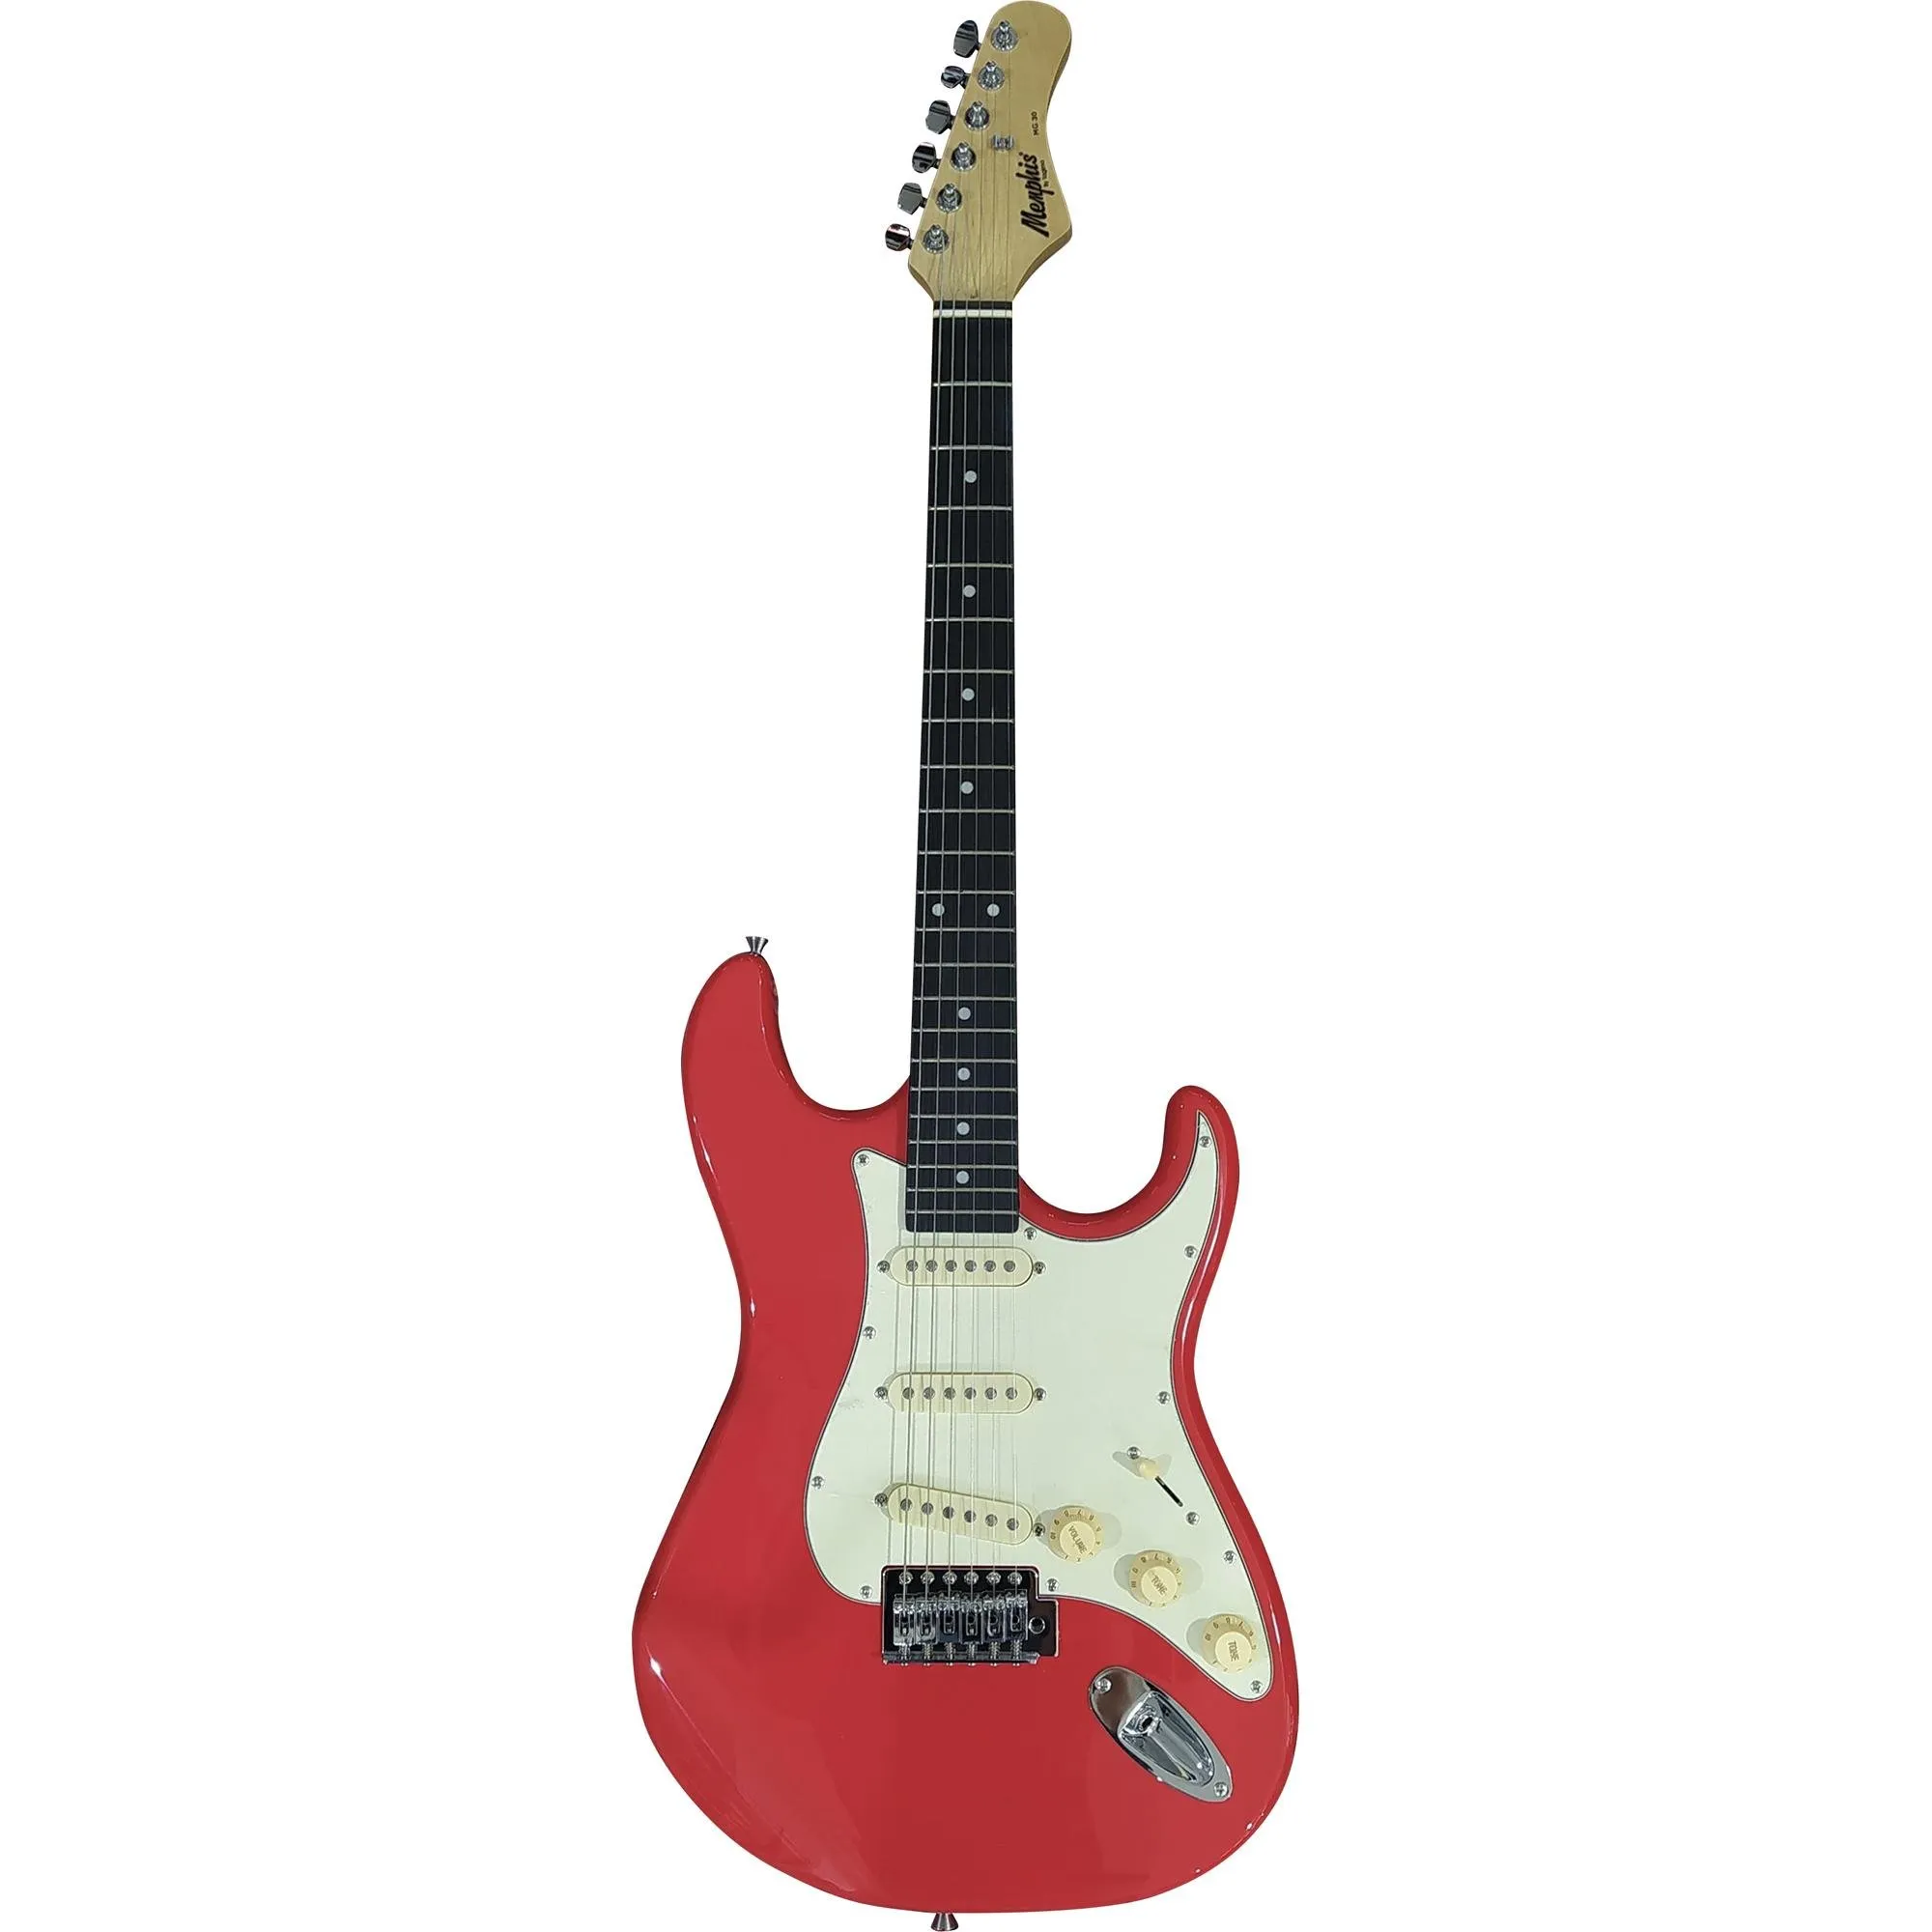 Guitarra Tagima MG30 Memphis Fiesta Red por 759,99 à vista no boleto/pix ou parcele em até 10x sem juros. Compre na loja Mundomax!